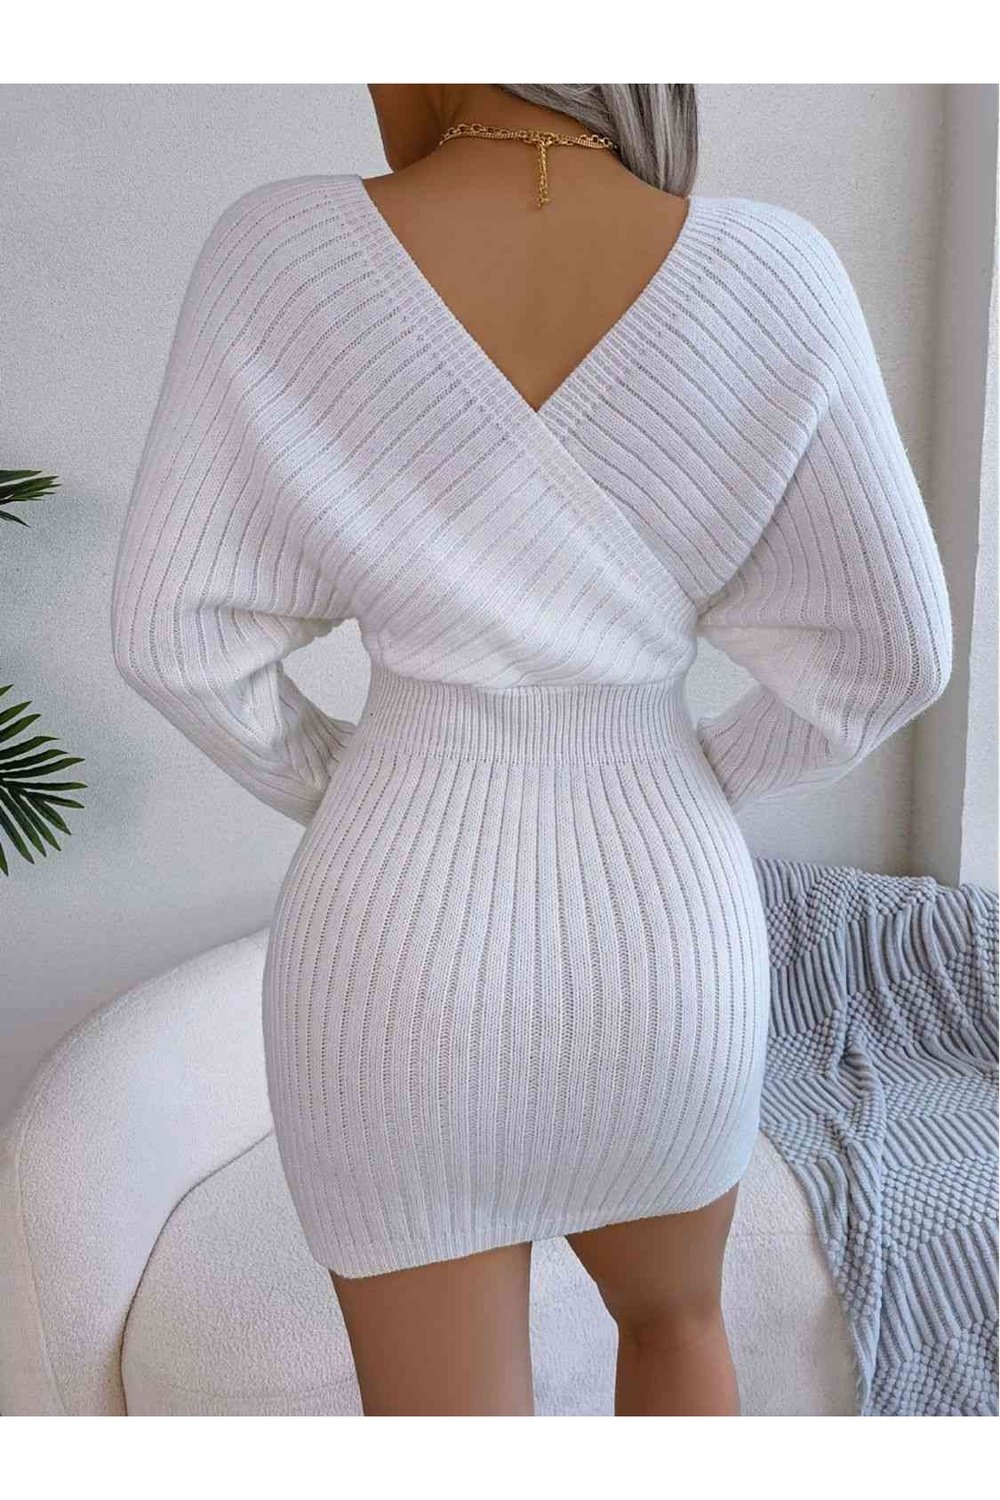 Rib-Knit Dolman Sleeve Sweater Dress - Sweater Dresses - FITGGINS